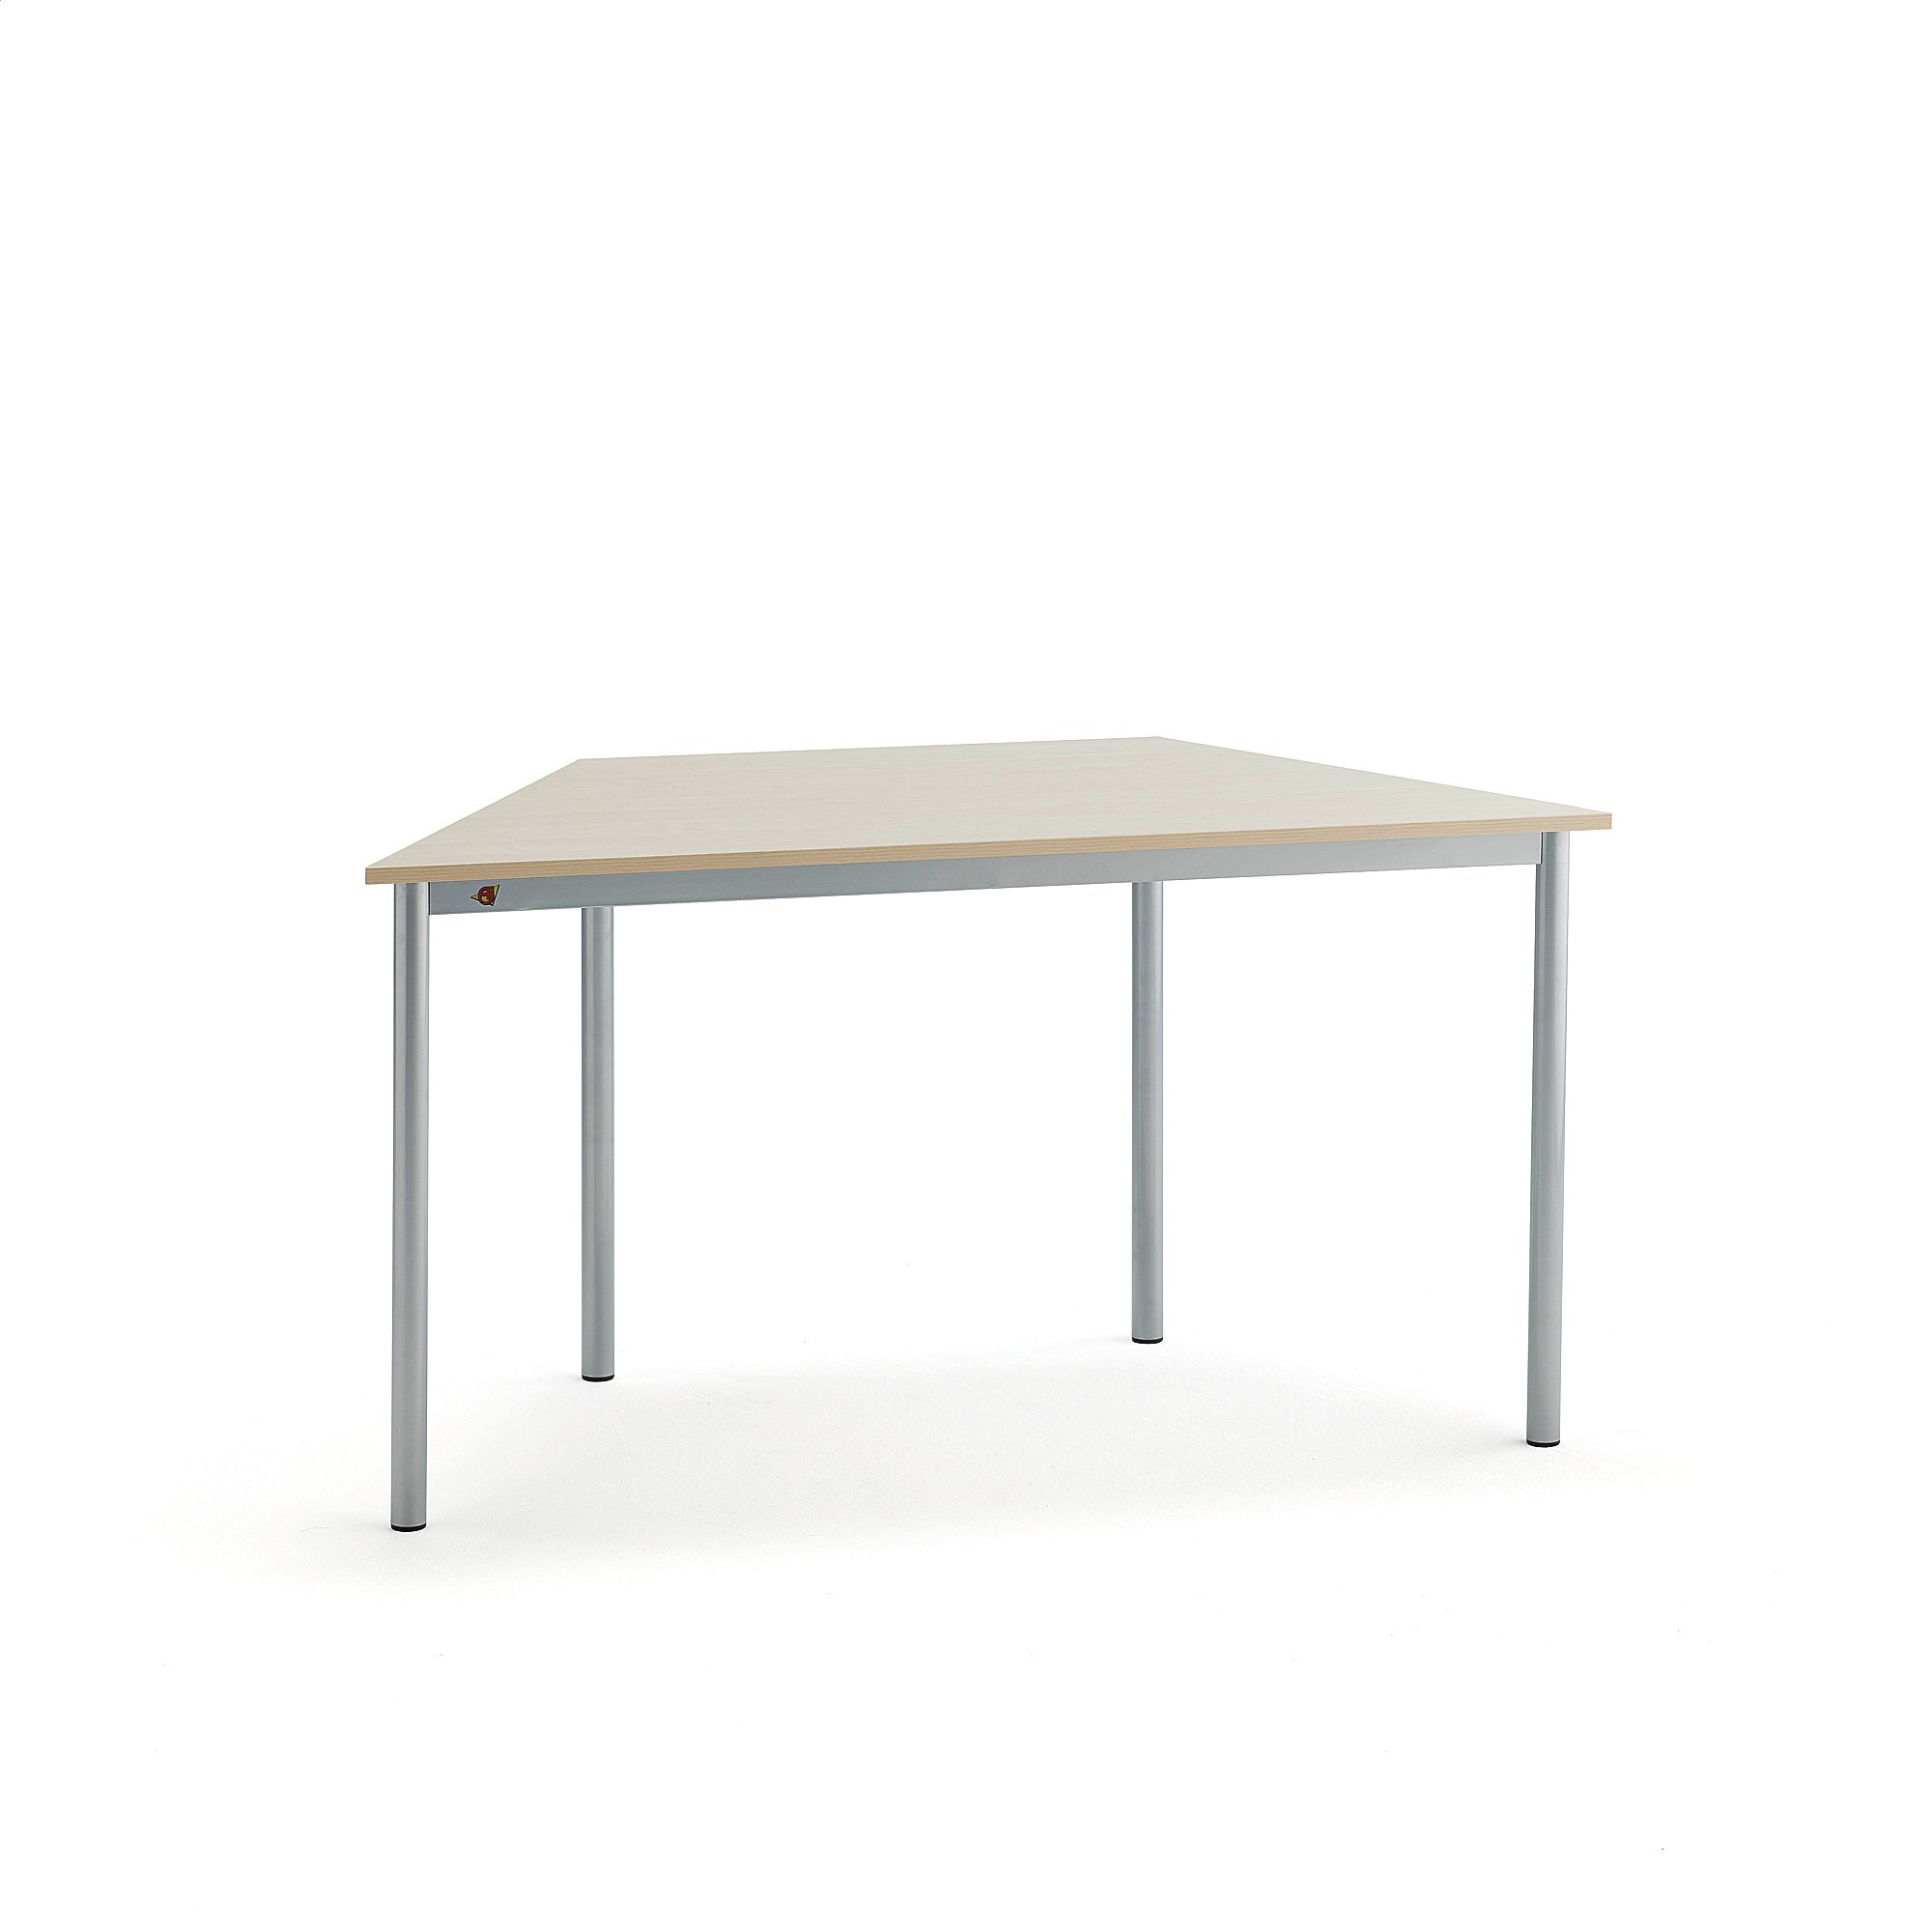 Stůl BORÅS TRAPETS, 1200x600x720 mm, stříbrné nohy, HPL deska, bříza